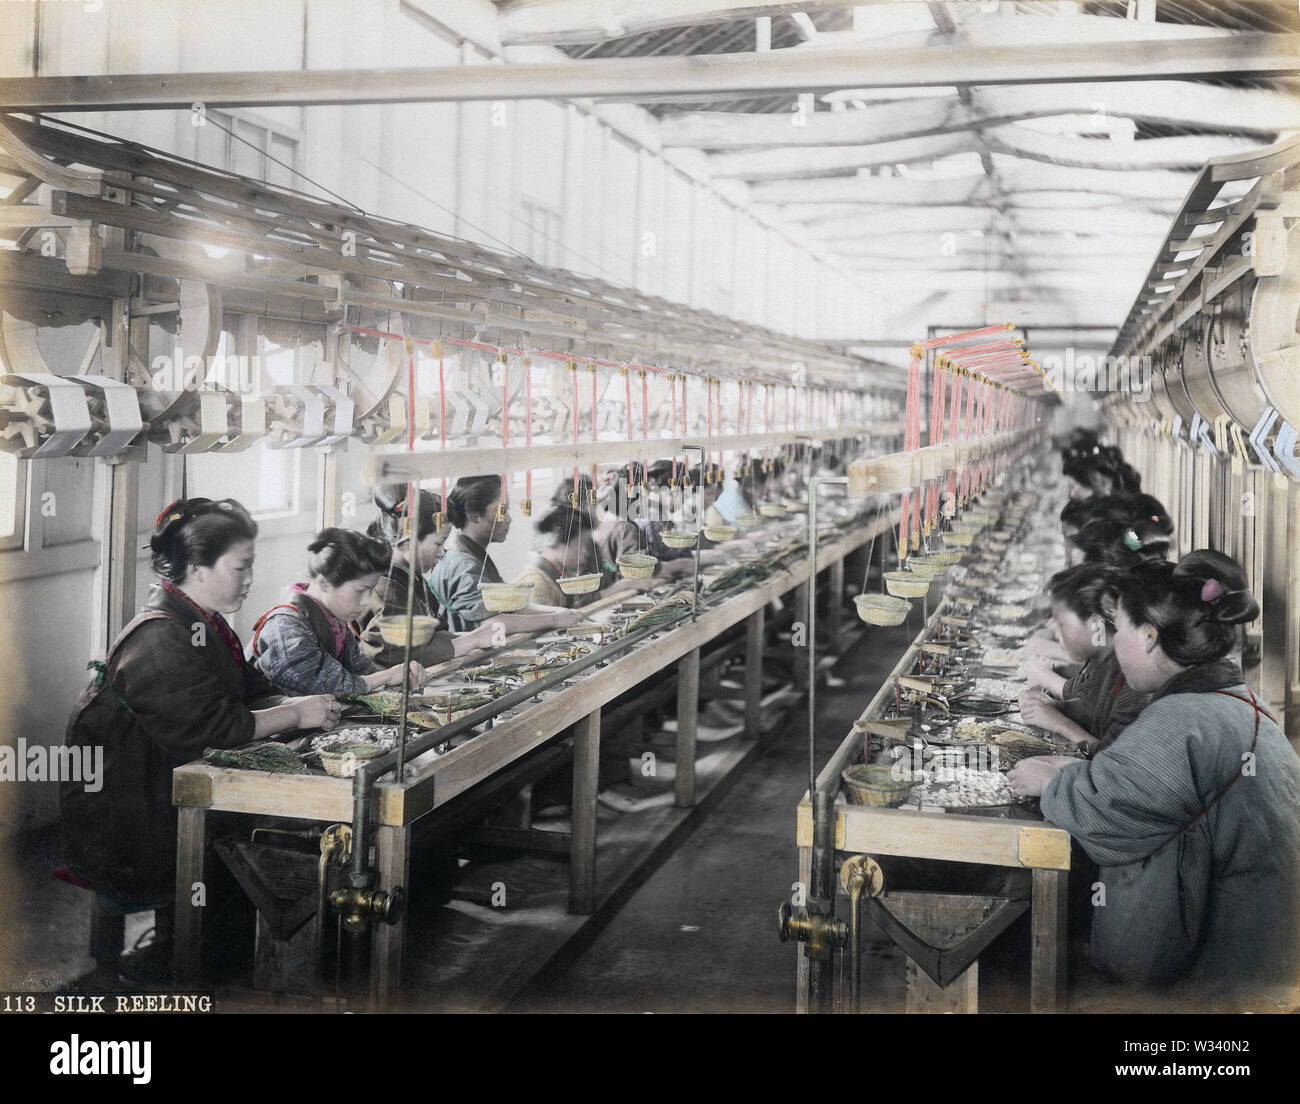 [1880s Japan - Japanische Frauen Reeling Silk] - Kochen Kokons und reeling Silk bei einer seidenfabrik. 19 Vintage albumen Foto. Stockfoto